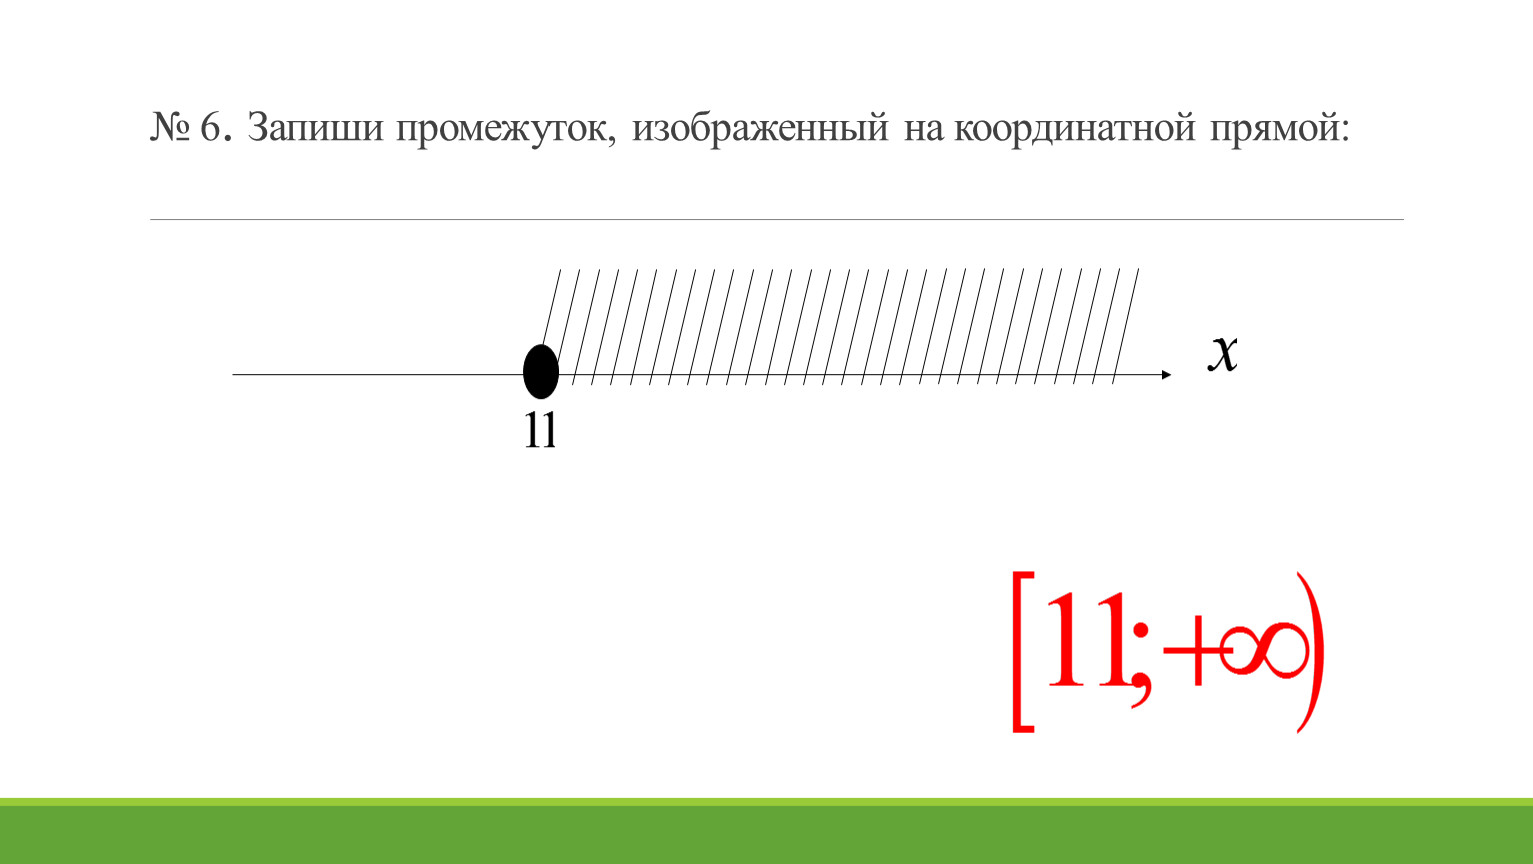 Изобразить промежутки на координатной прямой 2 10. Запишите промежуток изображенный на координатной прямой. Изобразите на координатной прямой промежуток. Изобразите на координатной прямой промежуток -3 2. Изобразите на координатной прямой промежуток -2 <x<9.